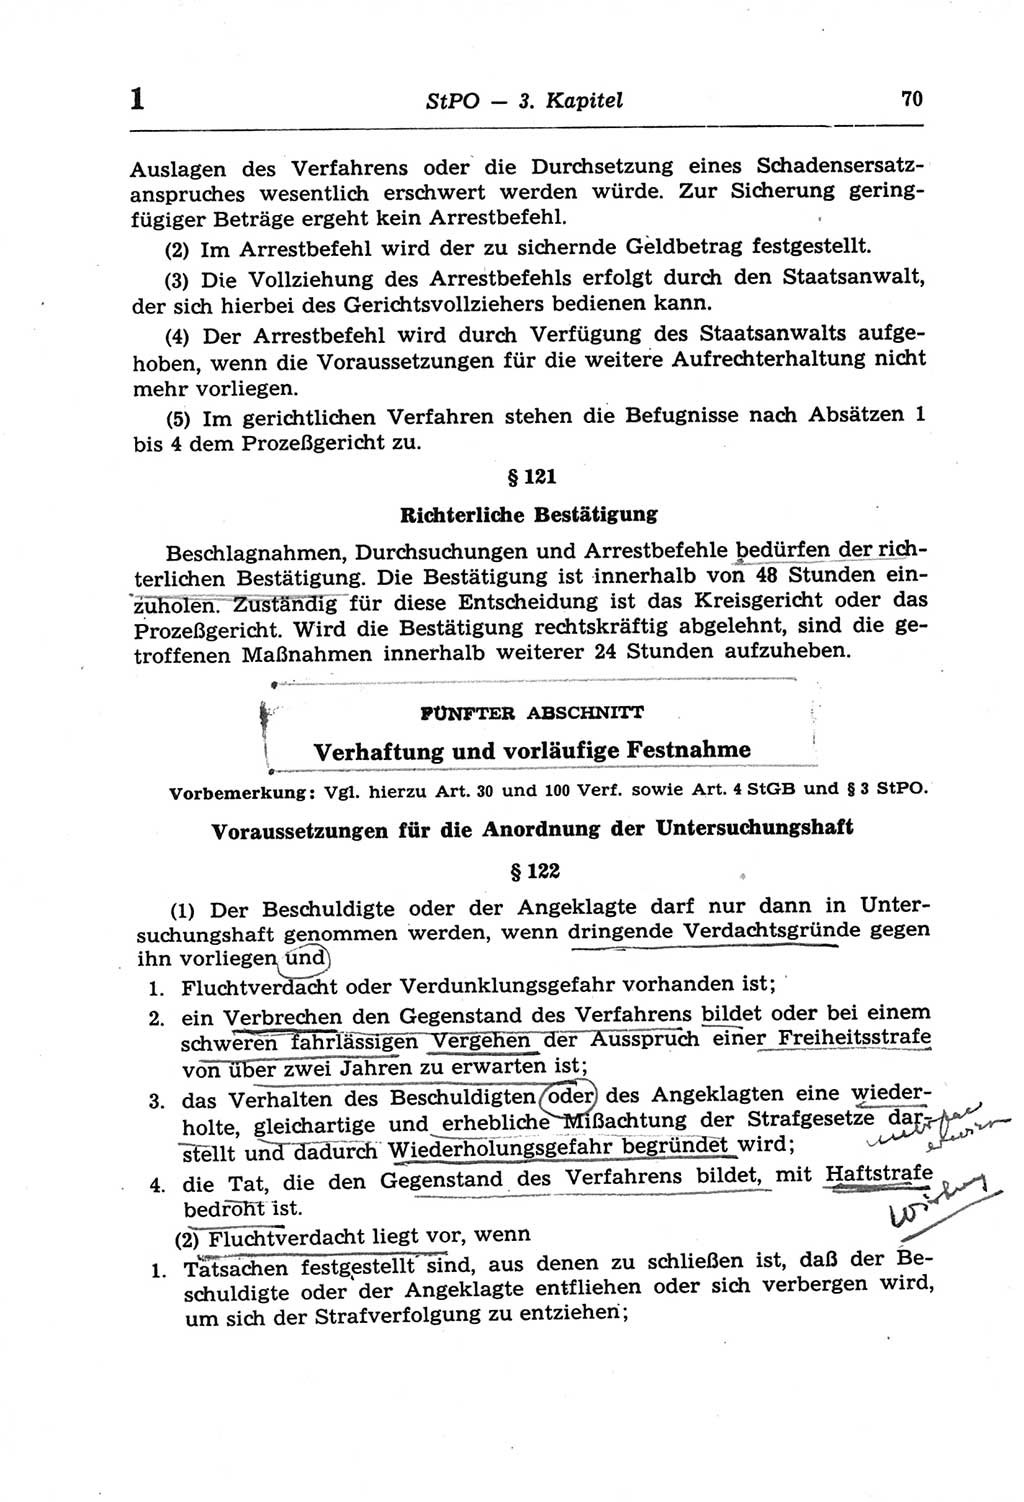 Strafprozeßordnung (StPO) der Deutschen Demokratischen Republik (DDR) und angrenzende Gesetze und Bestimmungen 1968, Seite 70 (StPO Ges. Bstgn. DDR 1968, S. 70)